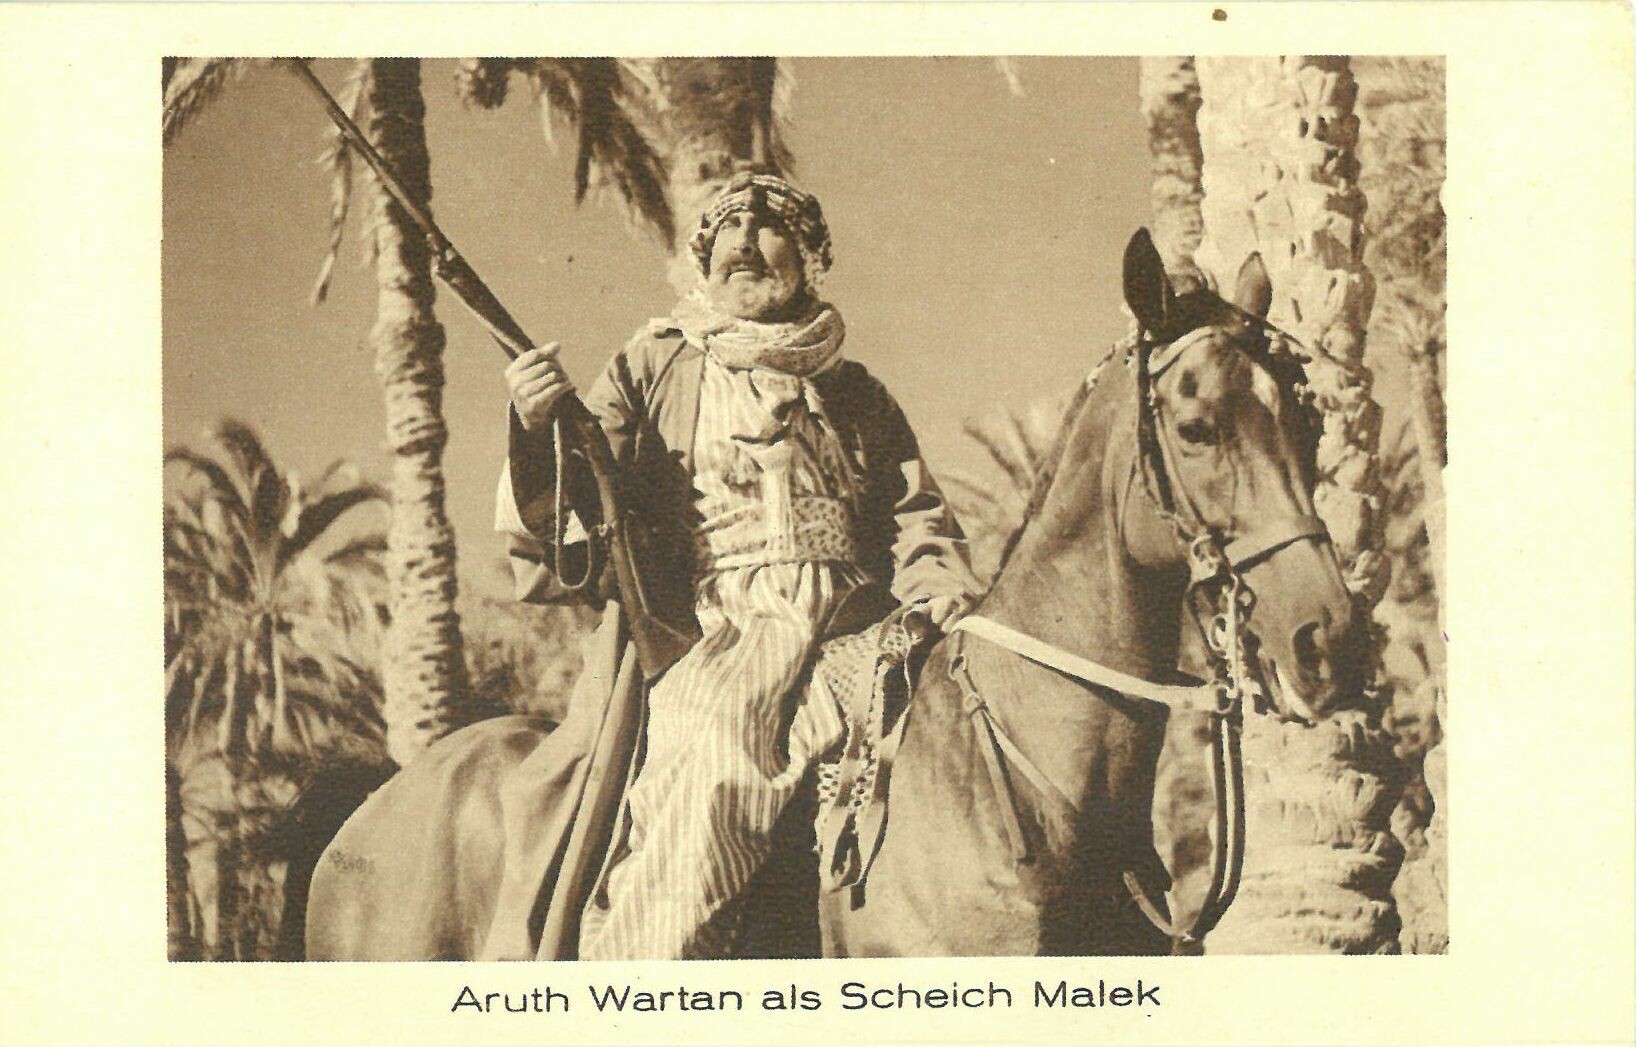 Syndikat-Film "Durch die Wüste", Serienbild Nr. 7 Aruth Wartan als Scheich Malek (Karl-May-Museum gGmbH RR-R)